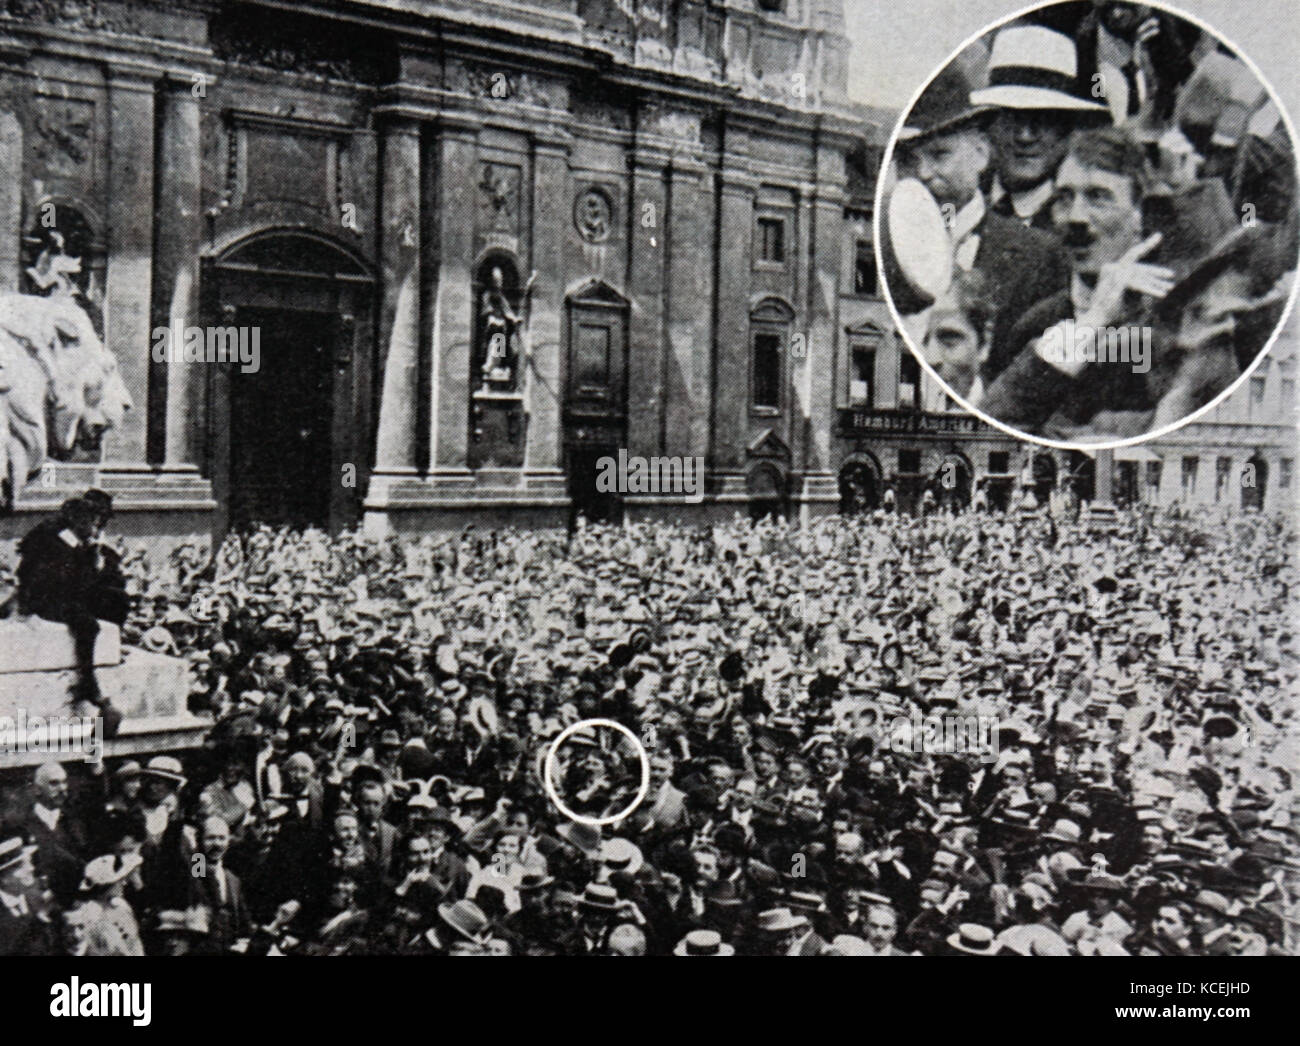 Foto zeigt Adolf Hitler in einer Menschenmenge, die von München Fotograf Heinrich Hoffmann, auf einer Kundgebung zur Unterstützung der Krieg gegen Russland in der Münchner Odeonsplatz am 2. August 1914. Adolf Hitler (1889-1945), Führer der Nsdap, Bundeskanzler der Bundesrepublik Deutschland von 1933 bis 1945 Stockfoto